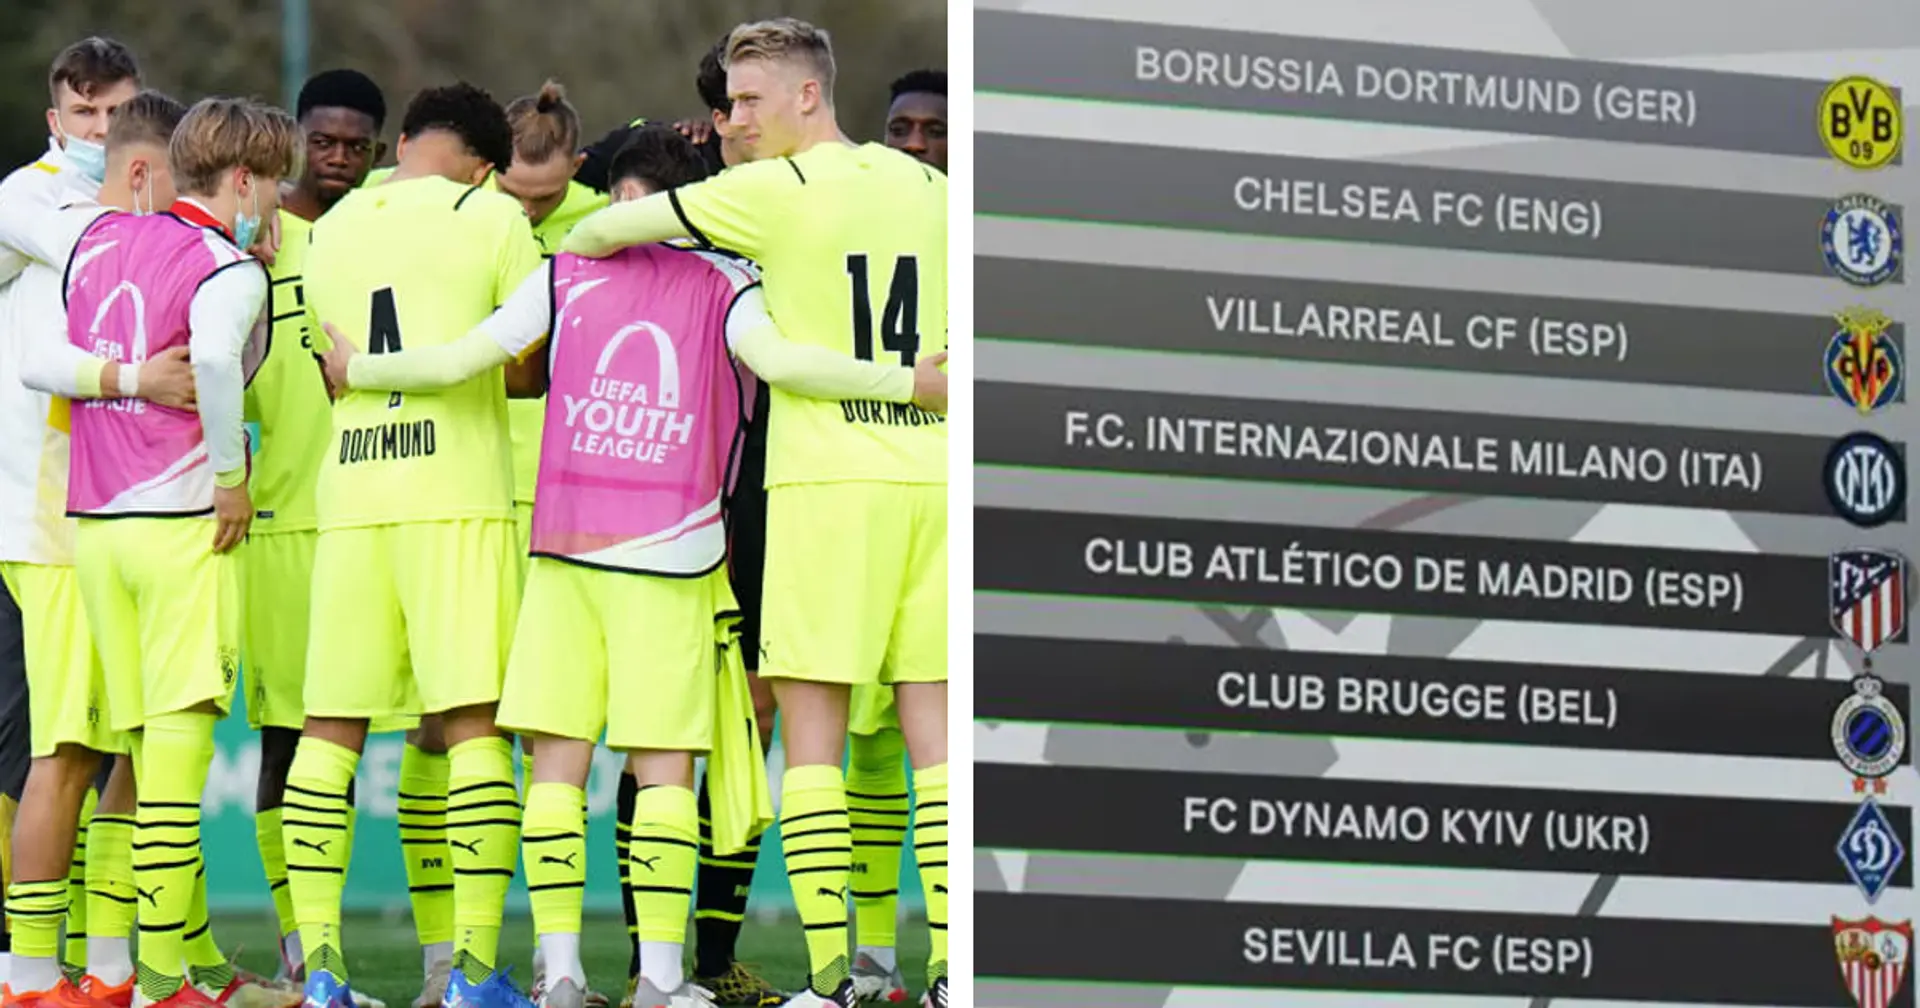 K.o.-Runde der Youth League wurde ausgelost: BVB-U19 spielt gegen den FC Empoli